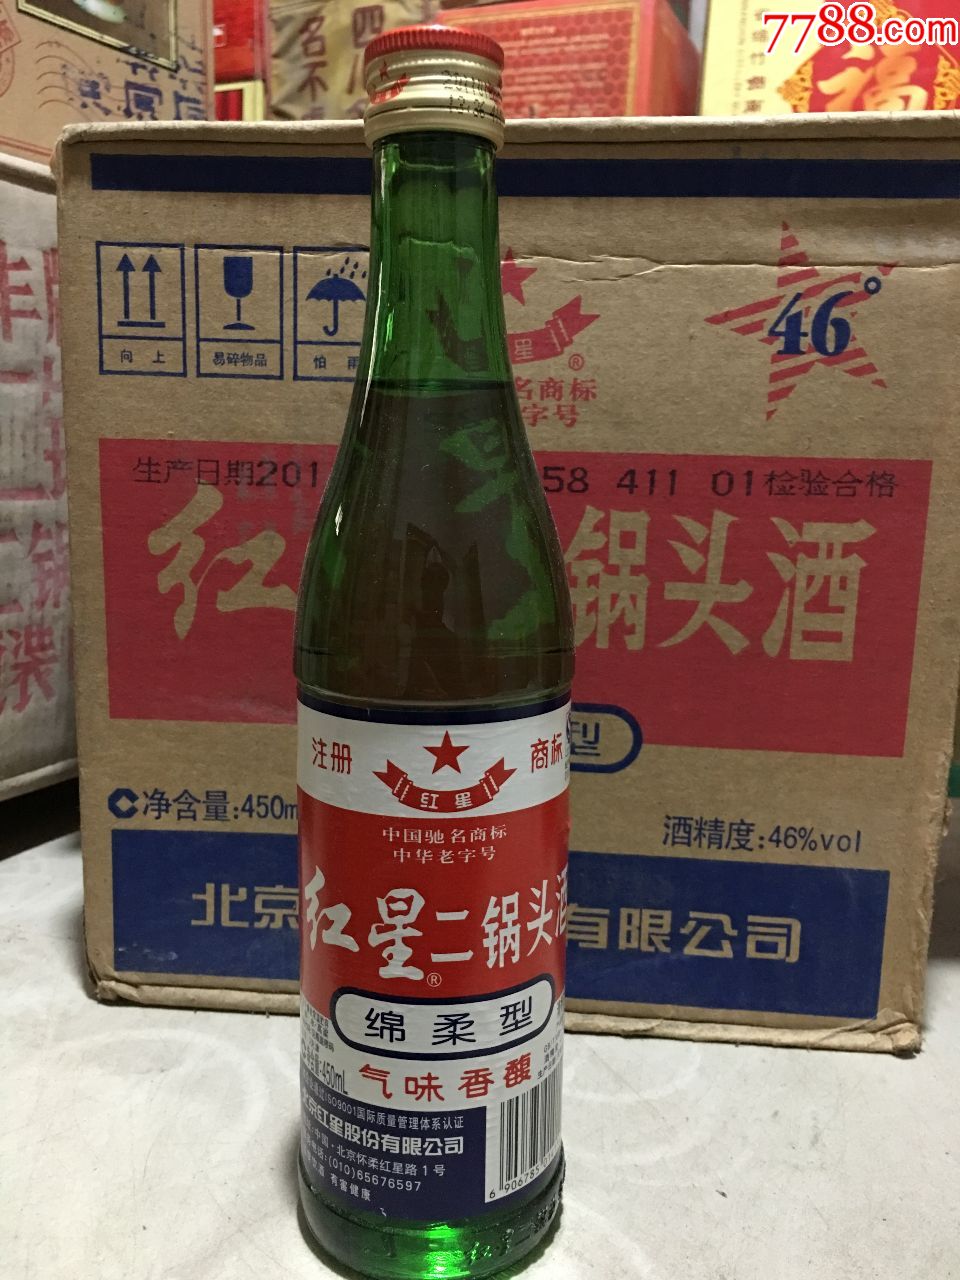 46度北京红星二锅头,老酒收藏纯粮名酒